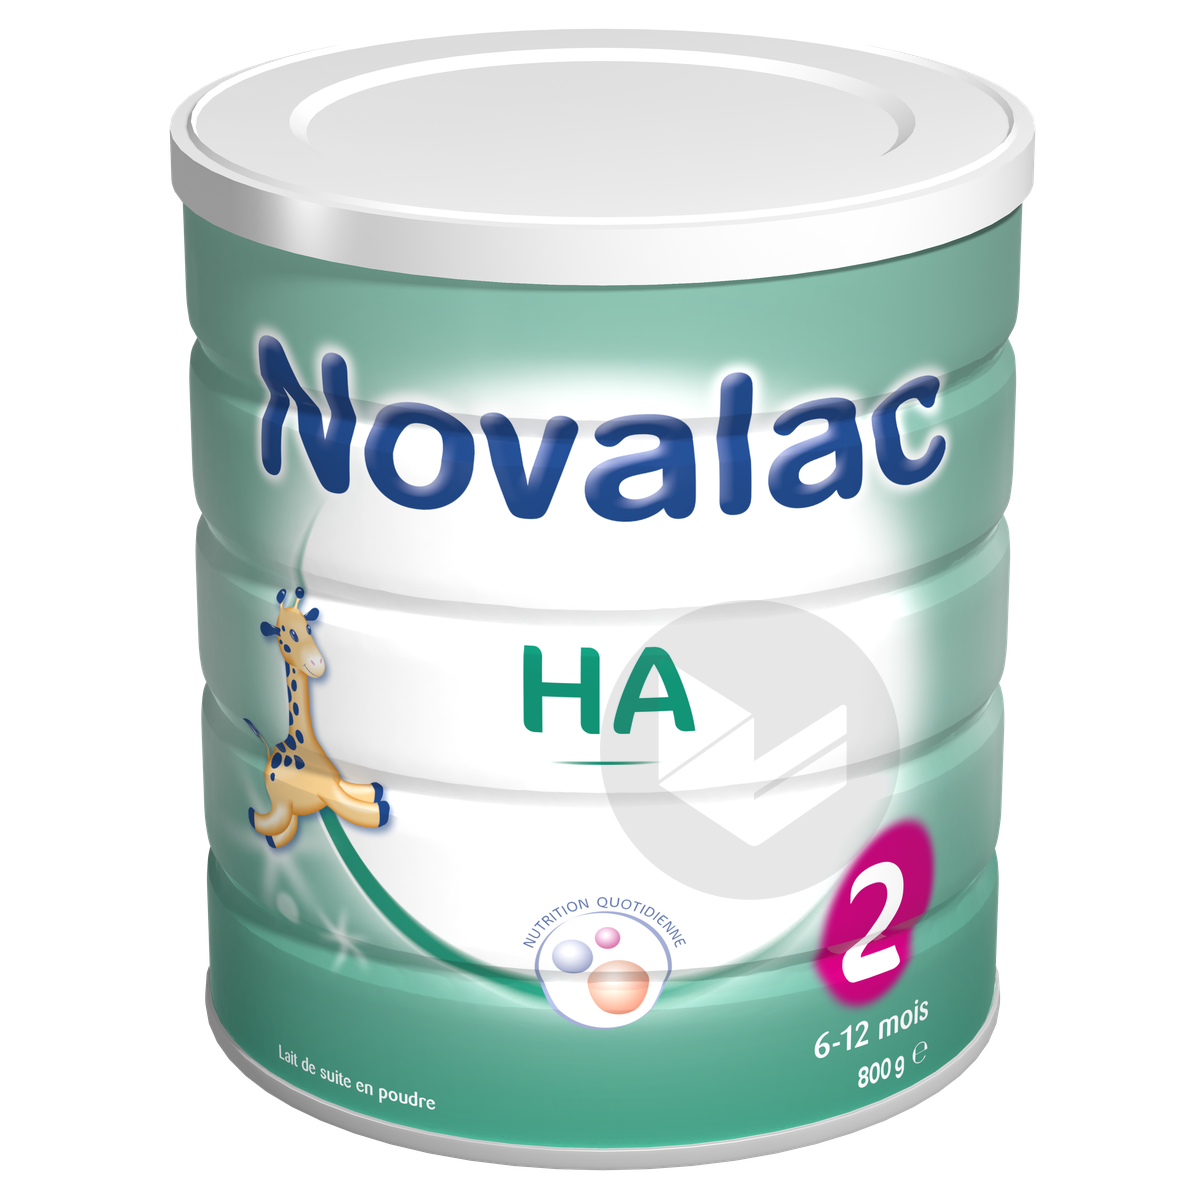 Novalac HA 2